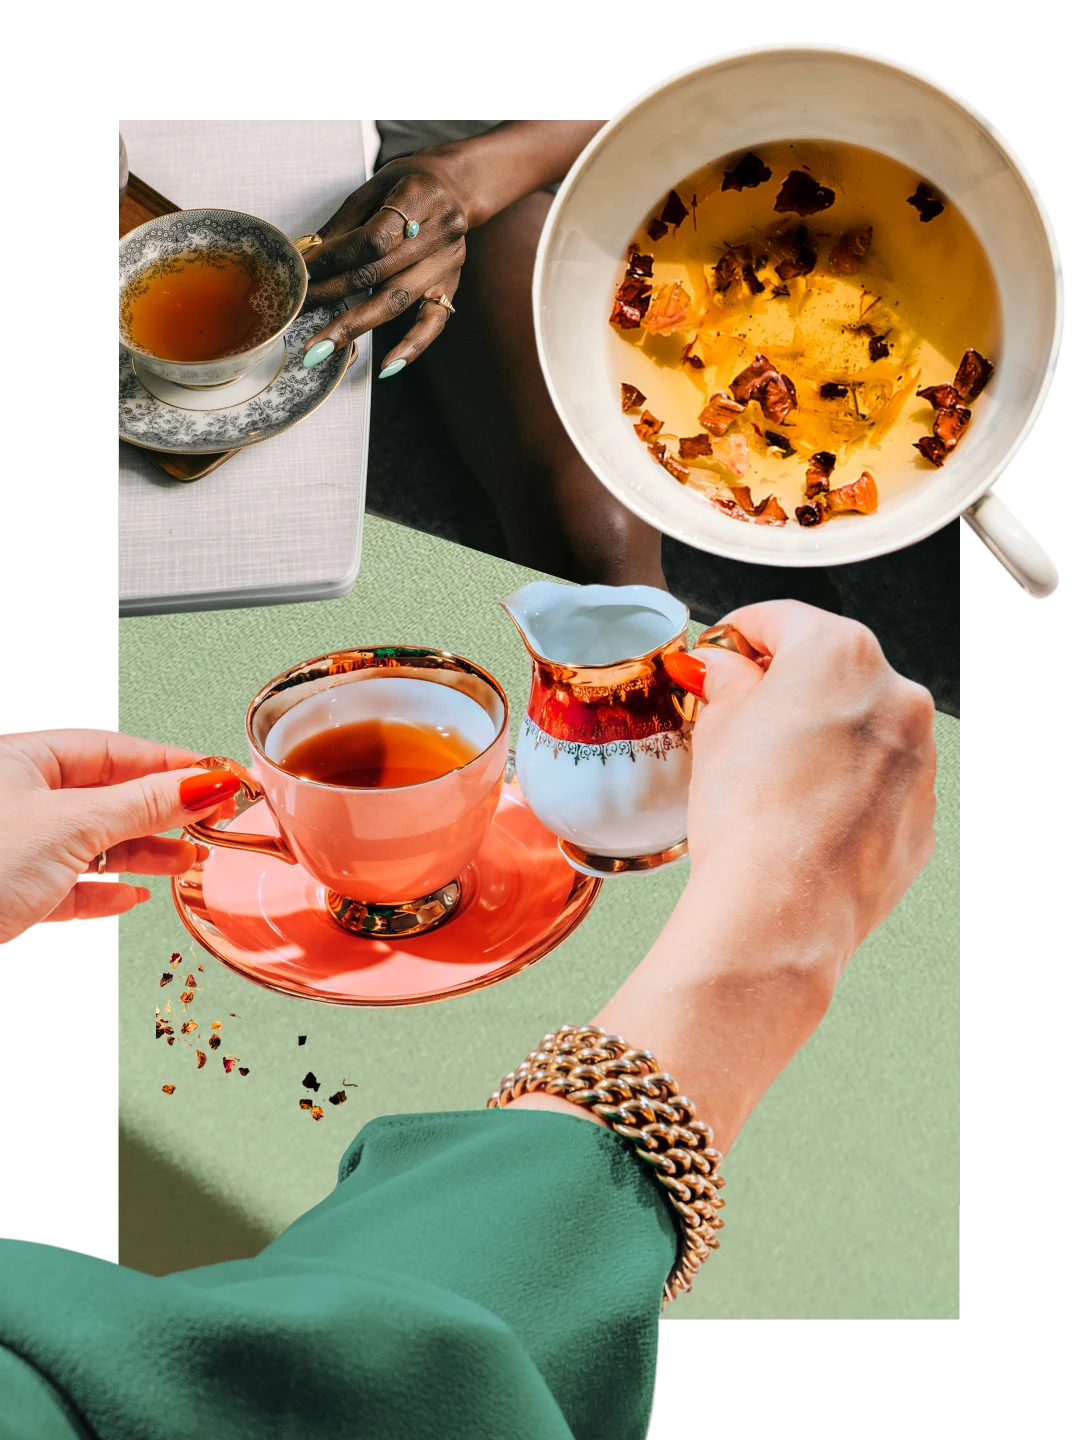 Collage de tazas de té llenas con infusiones de tonos ámbar con un fondo verde lima. Una mano de piel clara con una manga verde levanta una jarrita blanca con la parte de arriba roja. Una mano de piel oscura sostiene el asa de una taza de té antigua.
